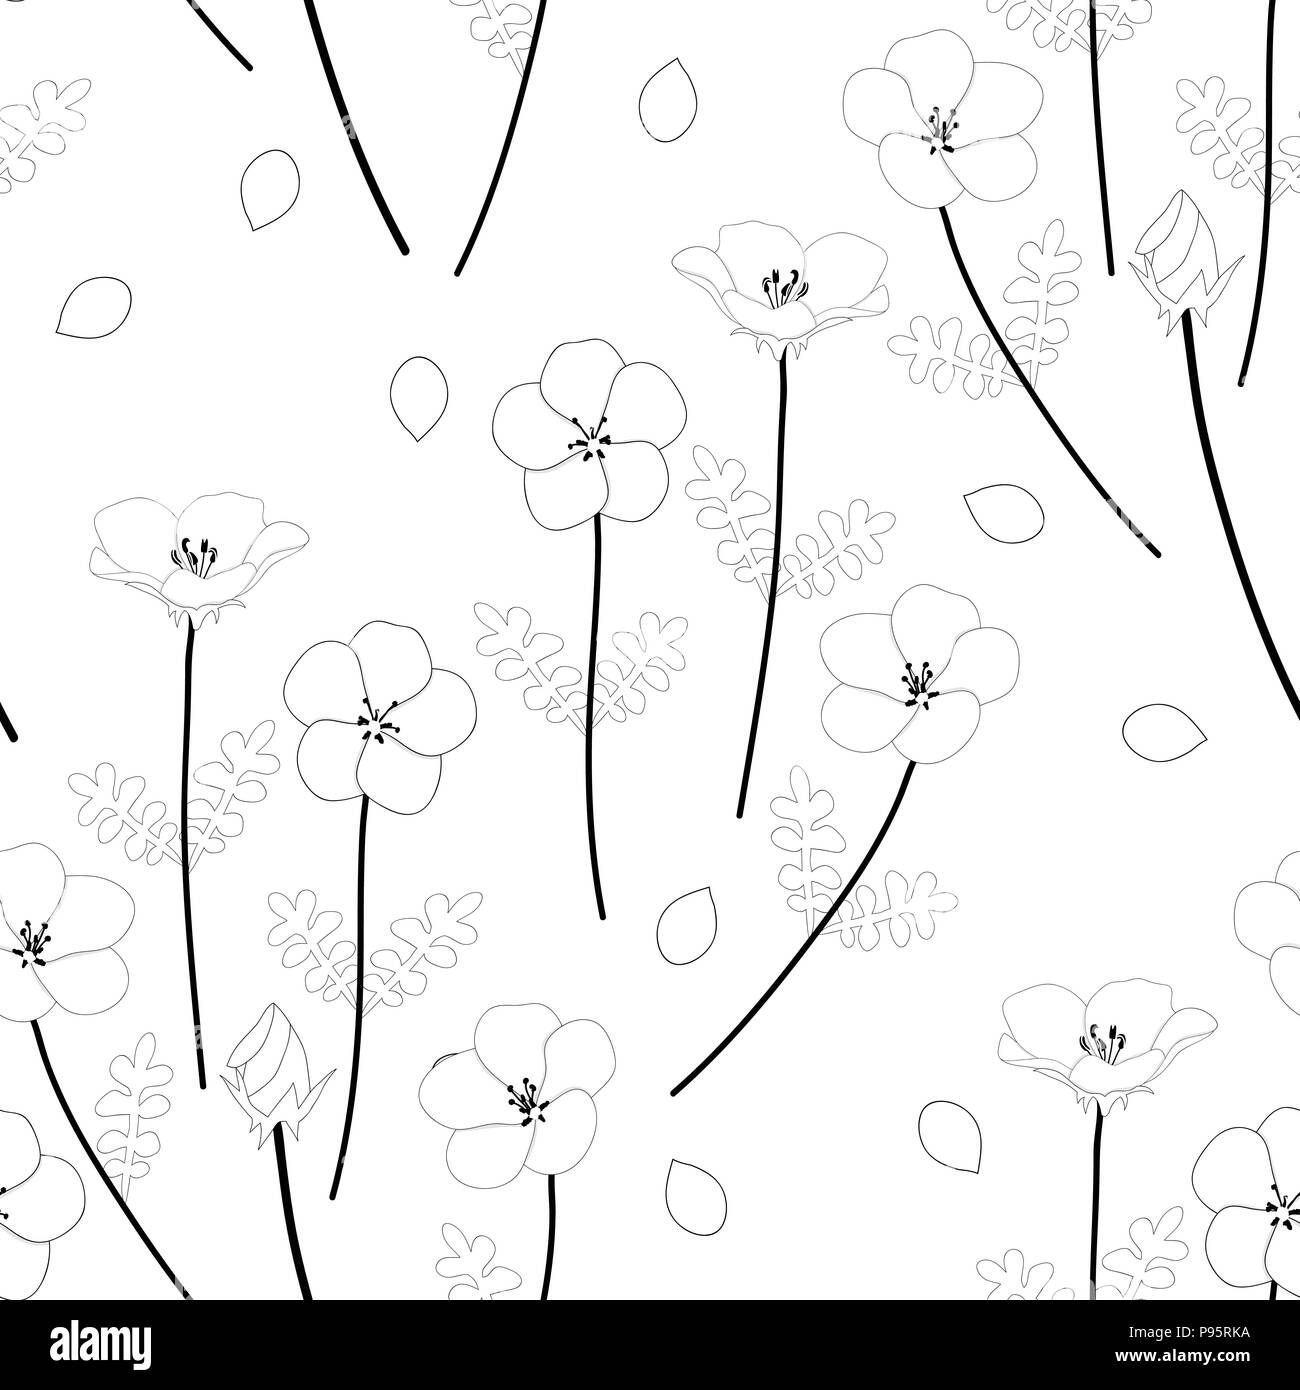 Nemophila Baby Blue Eyes Flower. Vector Illustration. on White Background. Stock Vector